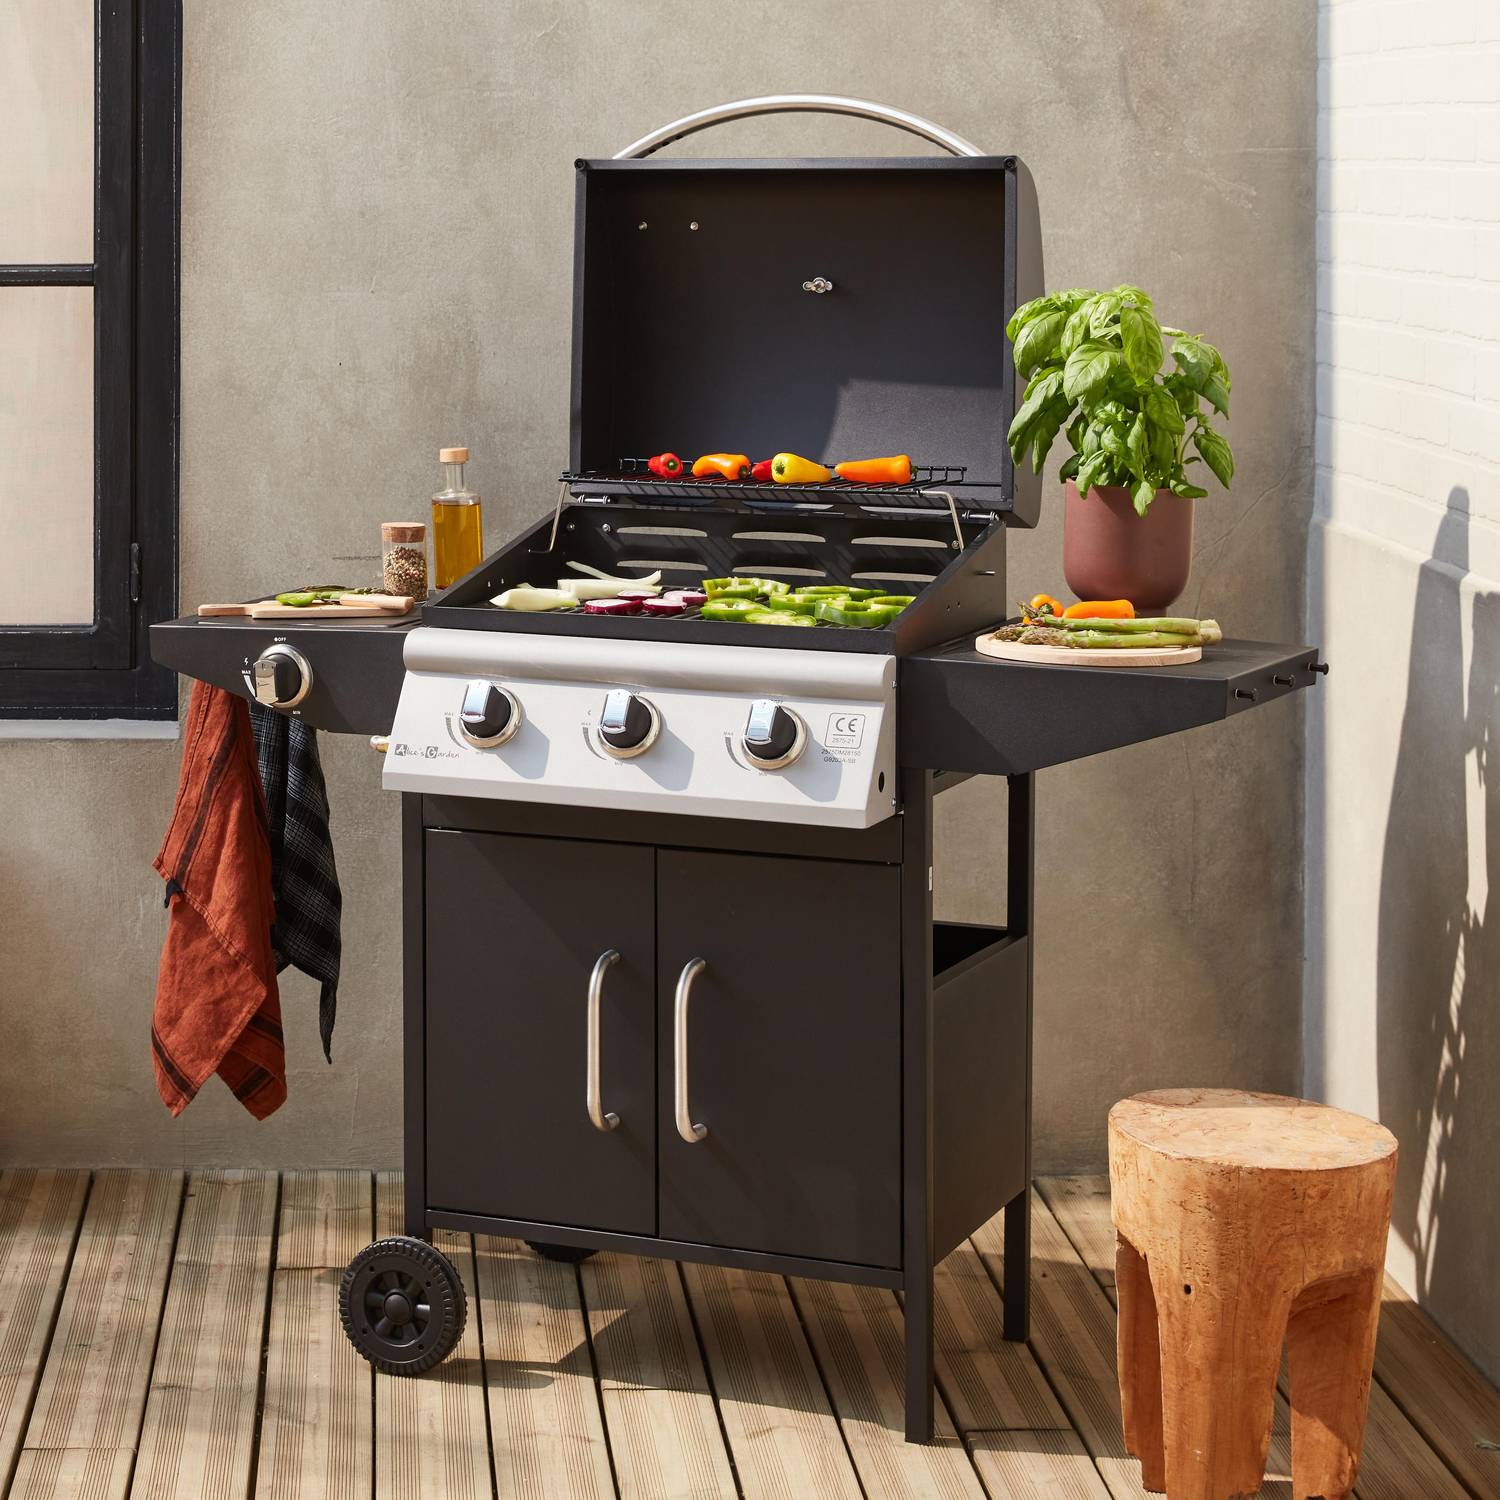 Barbecue a gás, cozinha de exterior, preto, 3 queimadores - Athos Photo2